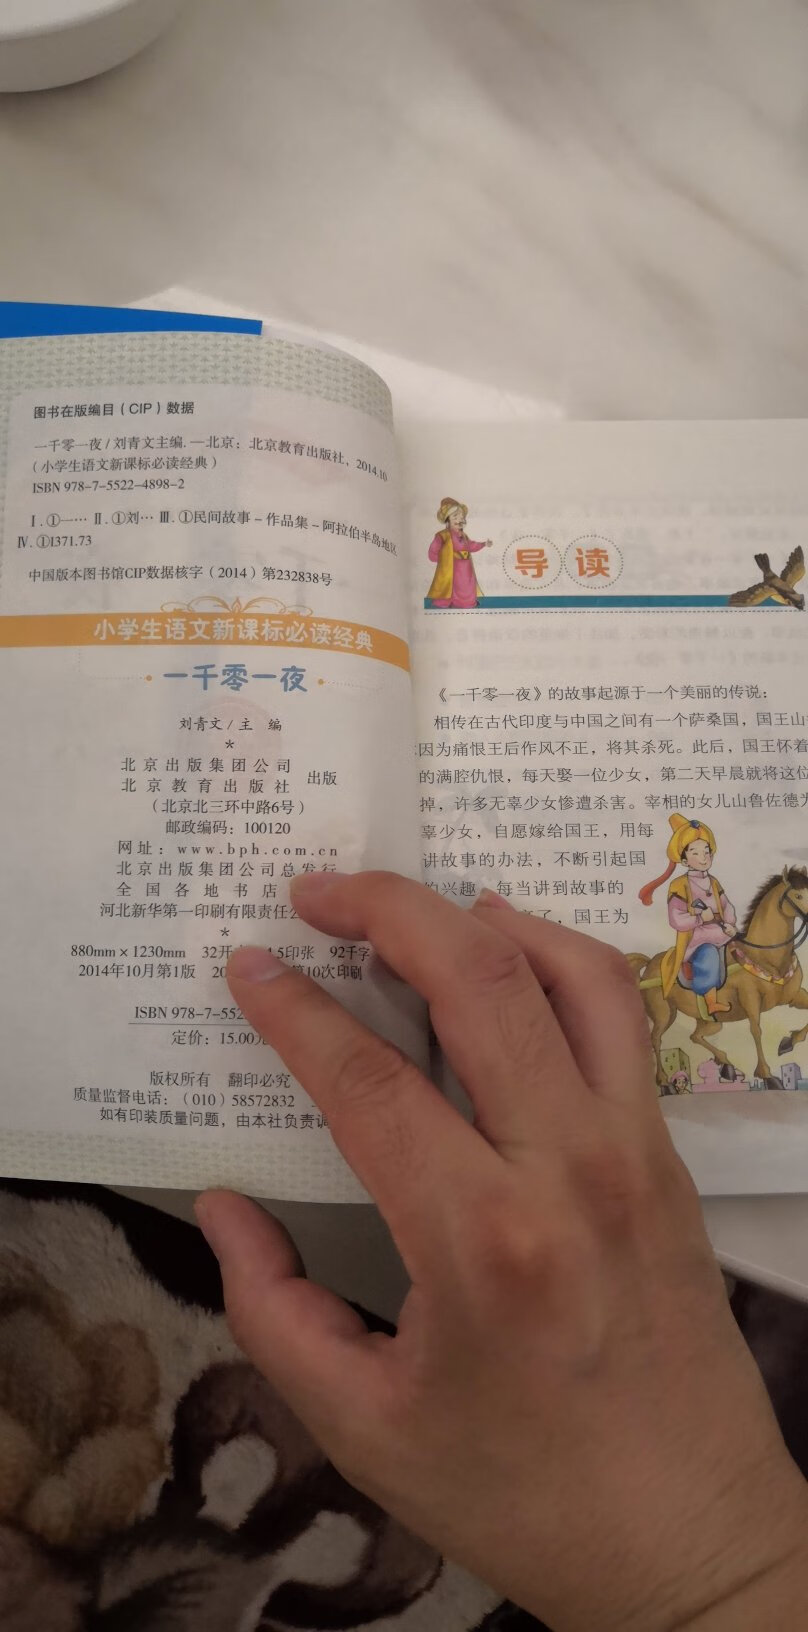 孩子爱看爱听，有拼音和汉字，印刷字挺清晰的。